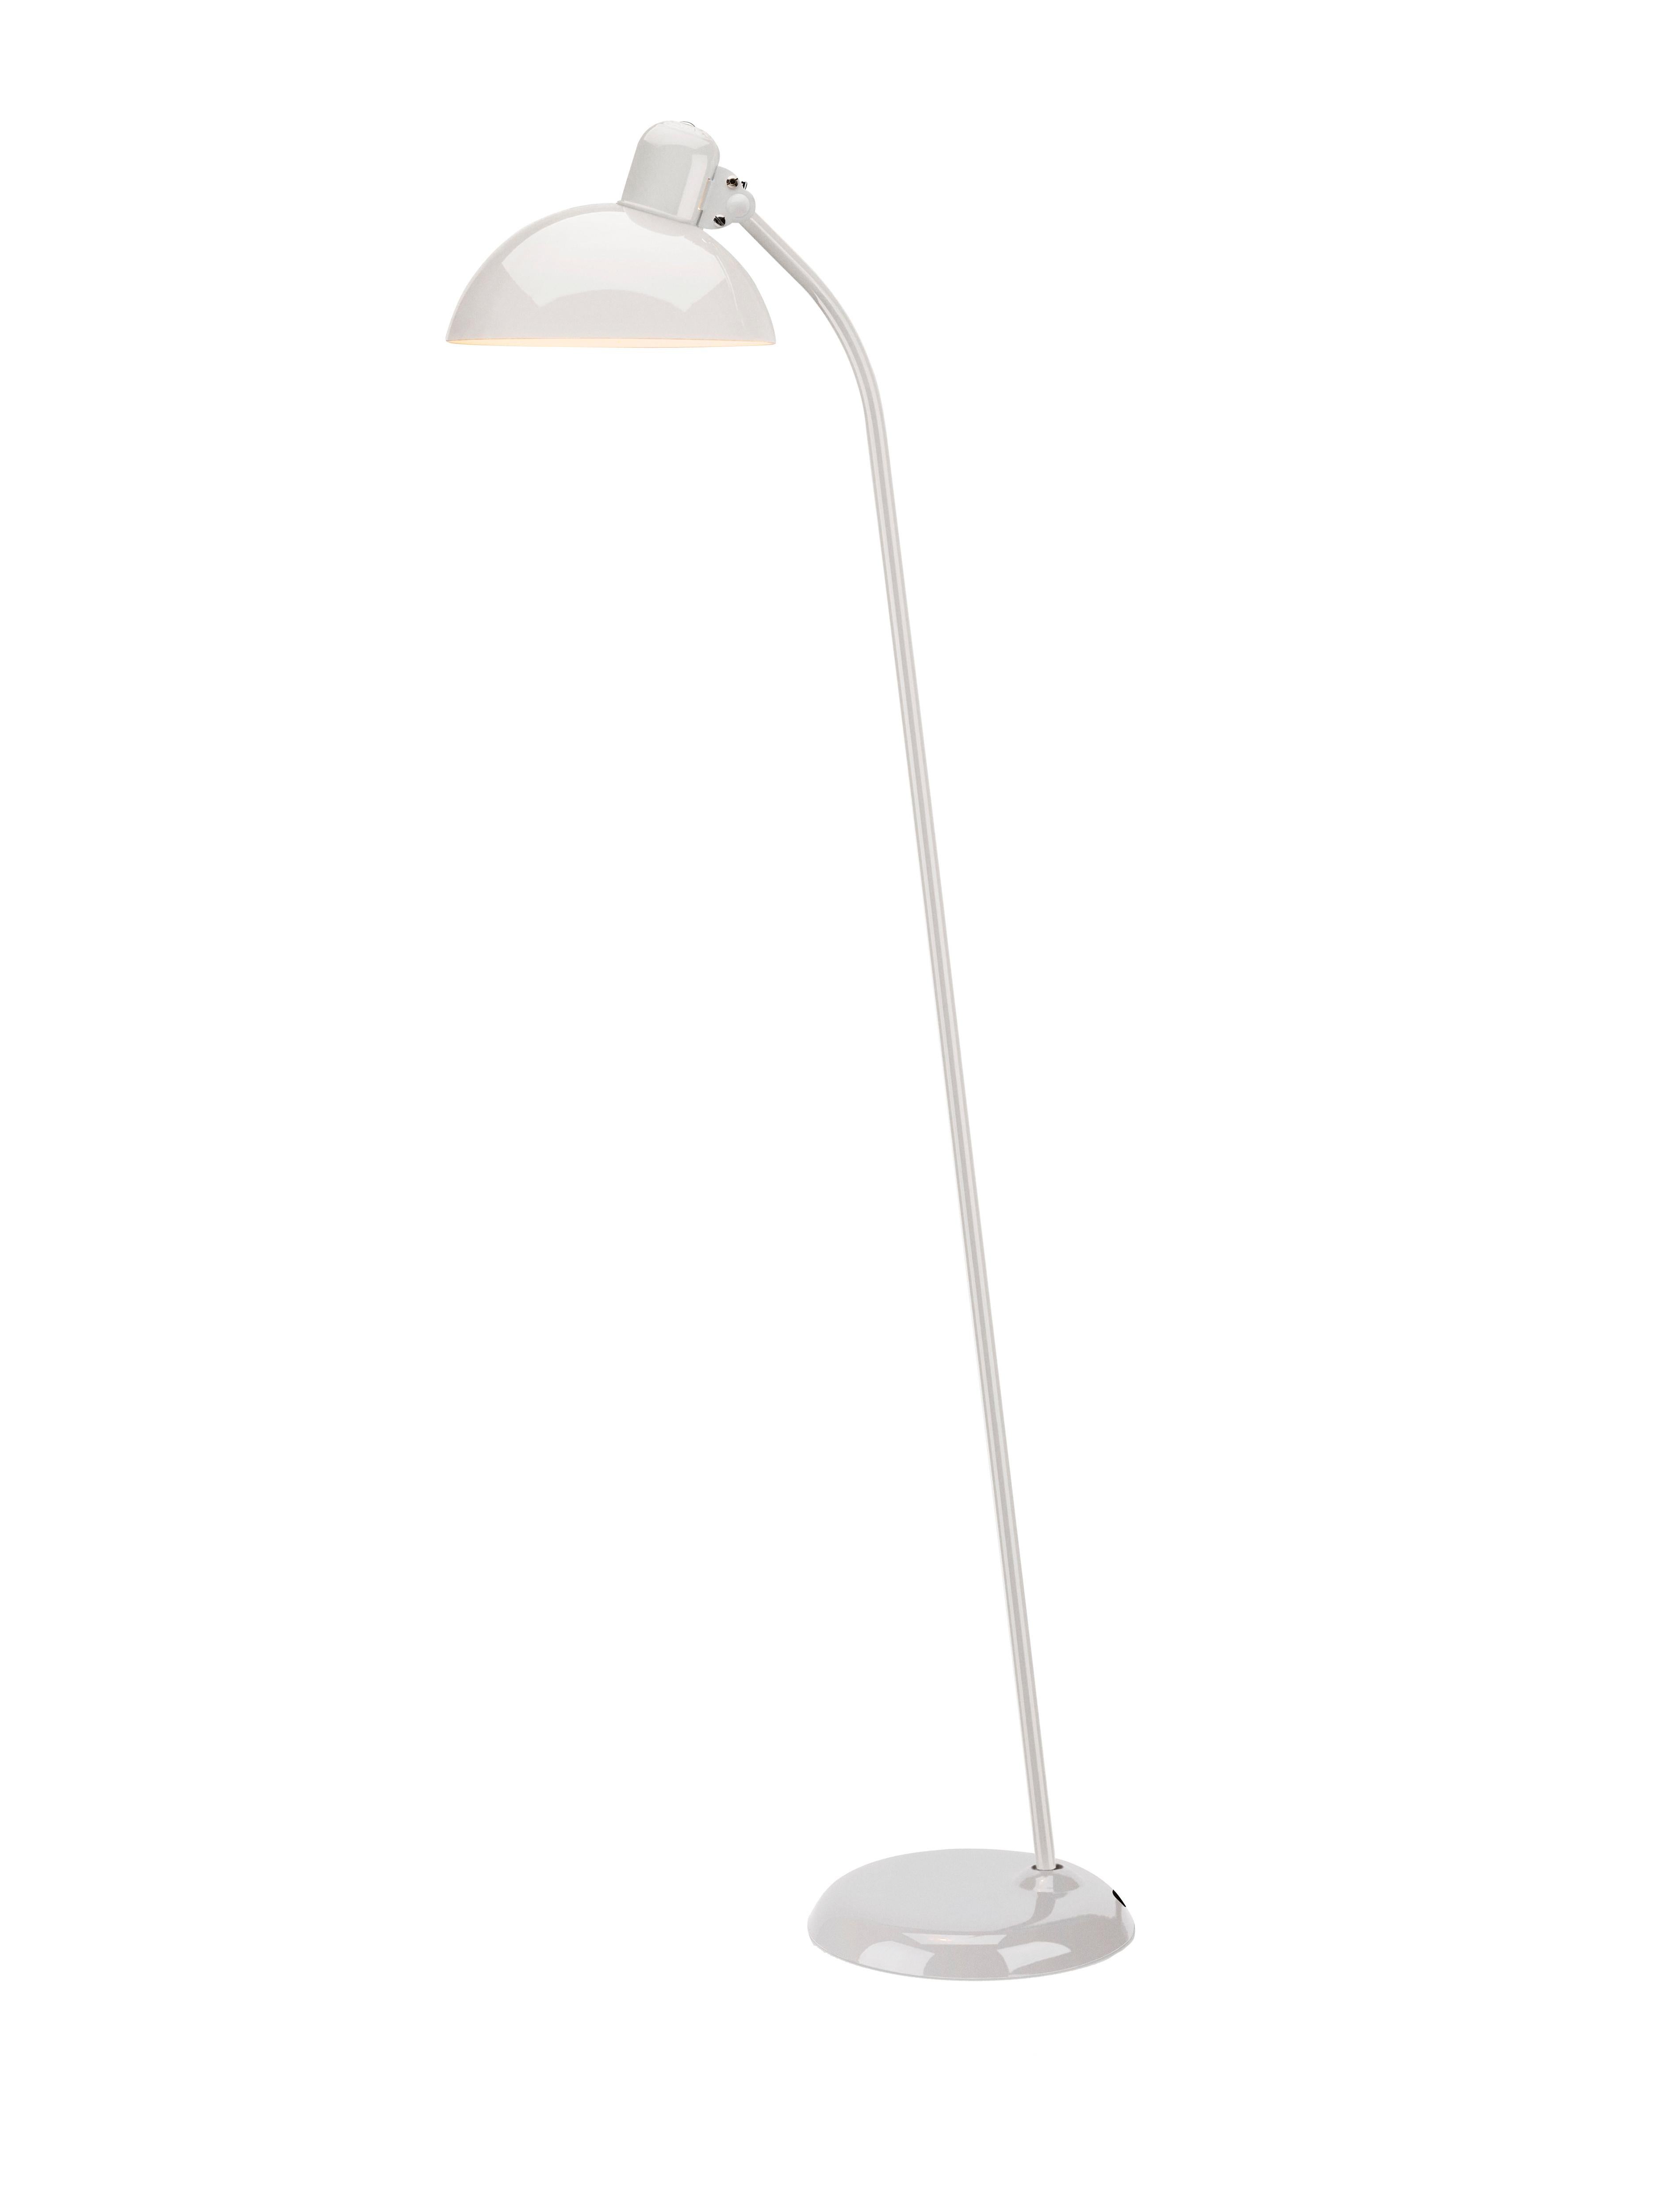 Christian Dell 'Kaiser Idell 6556-F' Floor Lamp for Fritz Hansen in Gloss Black For Sale 12